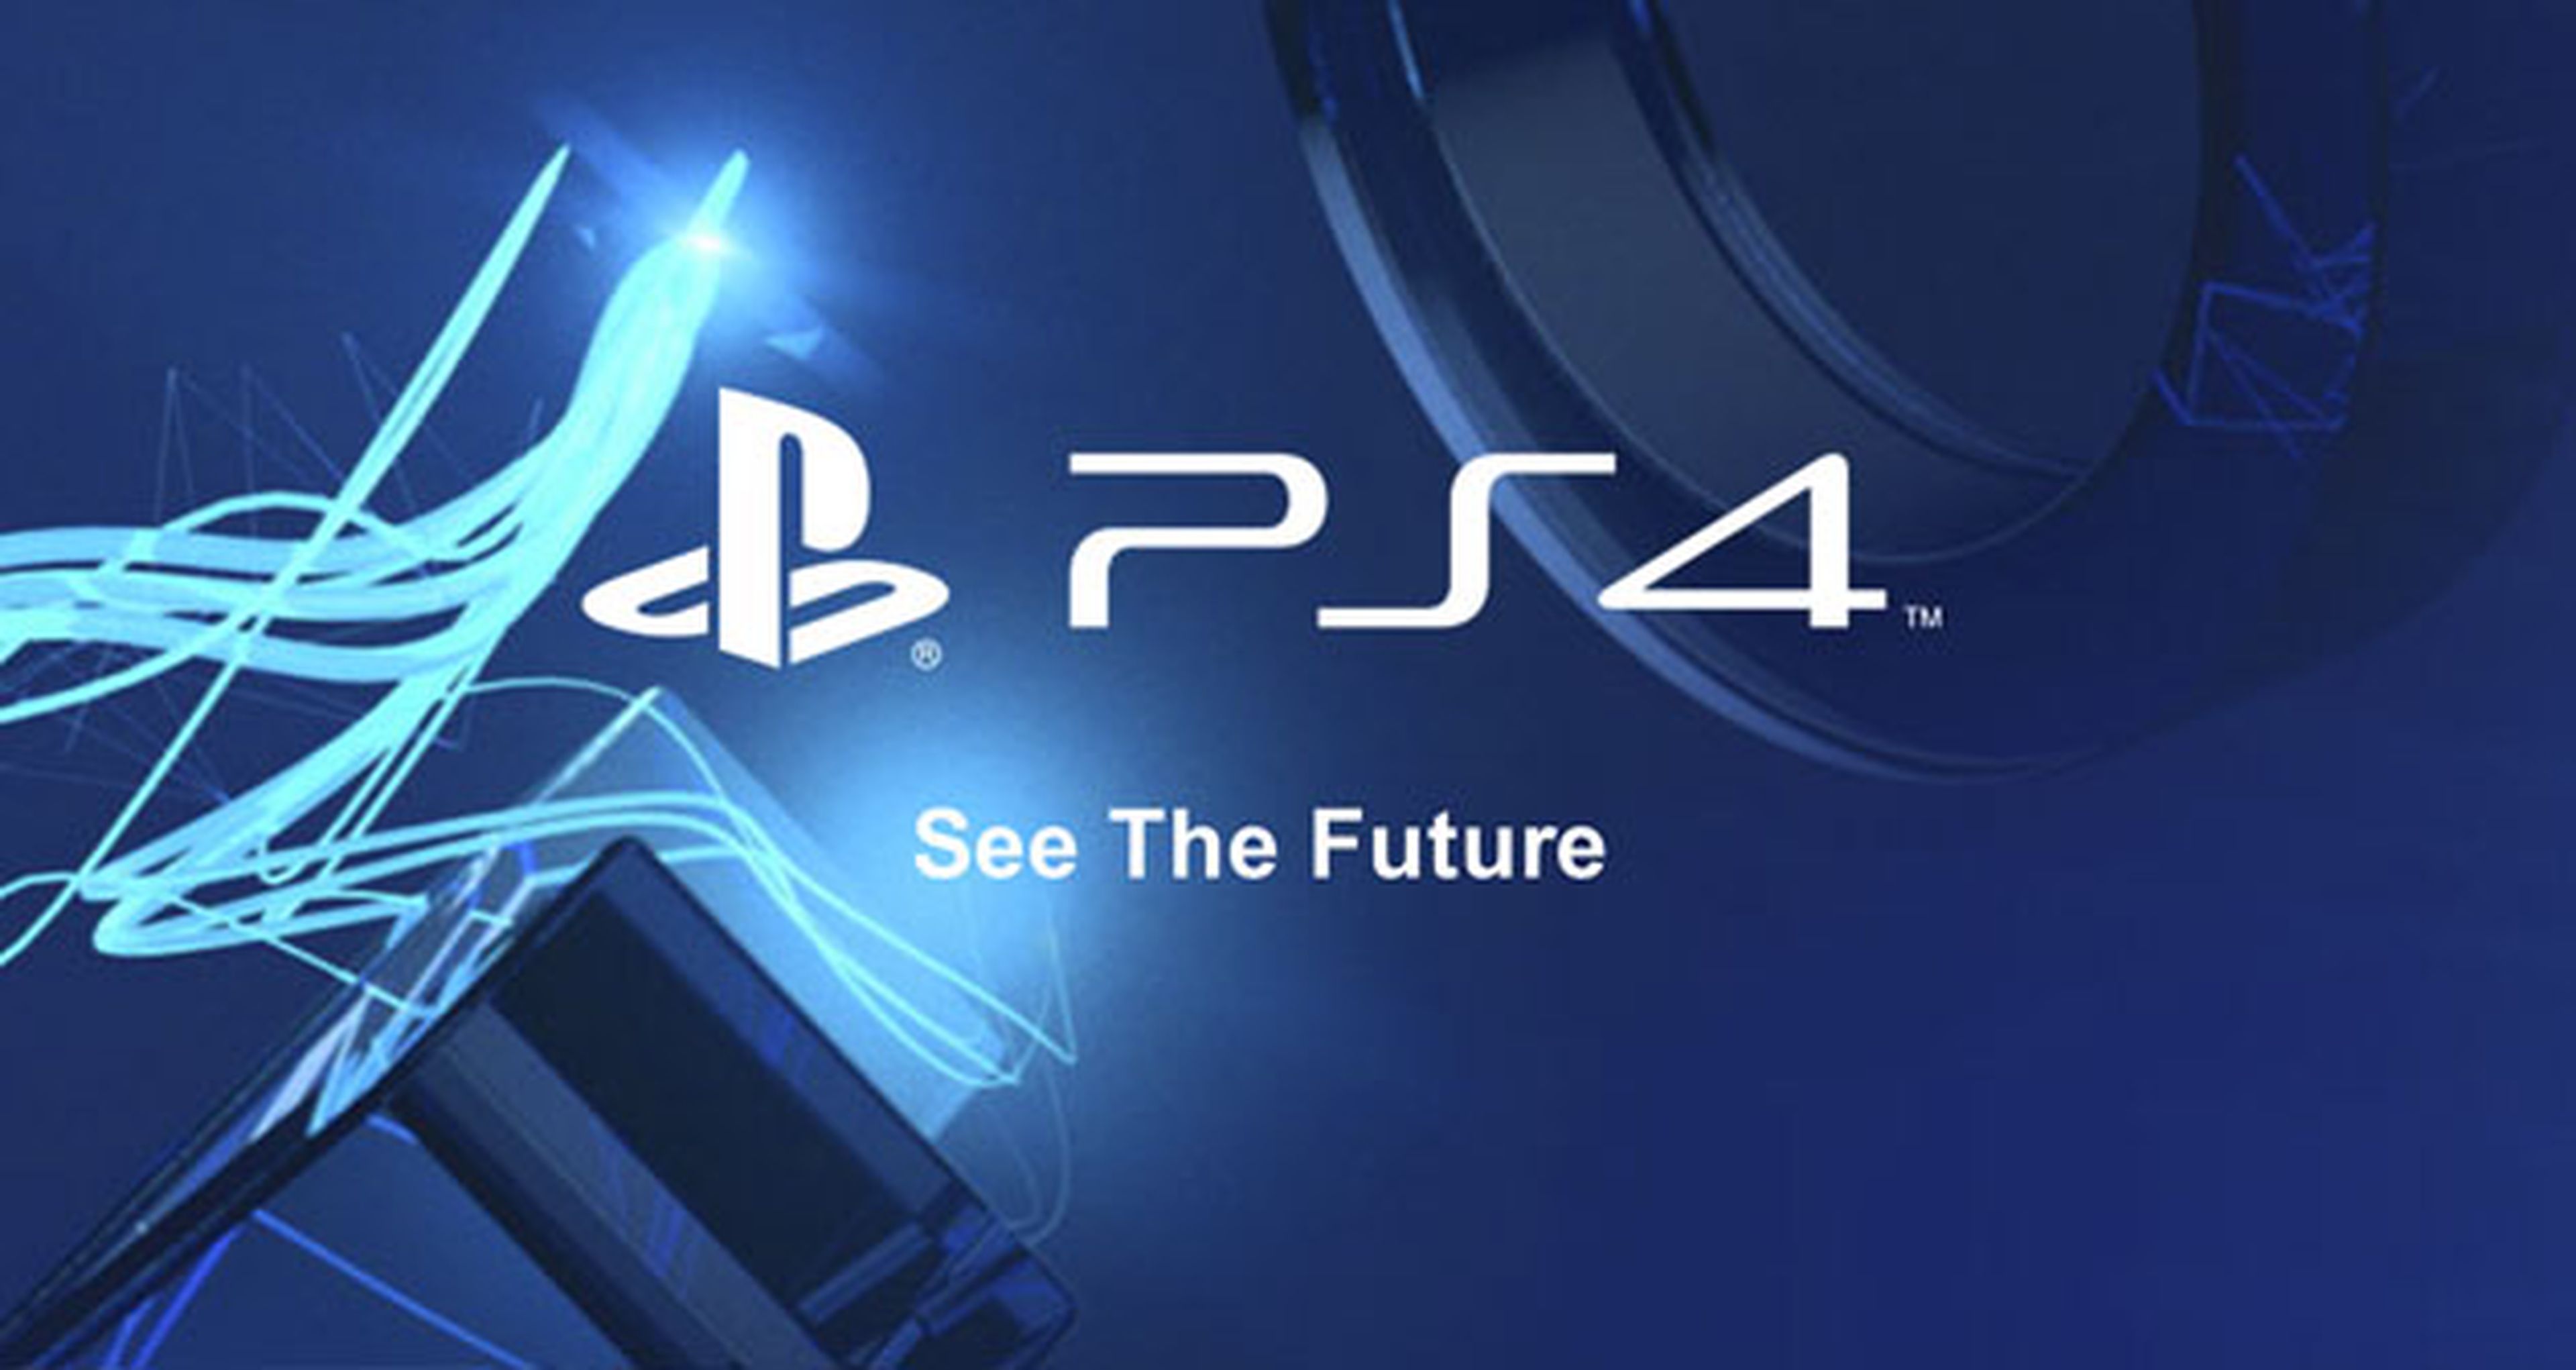 ¿Qué funciones quieres ver en PS4? Pídeselas a Sony